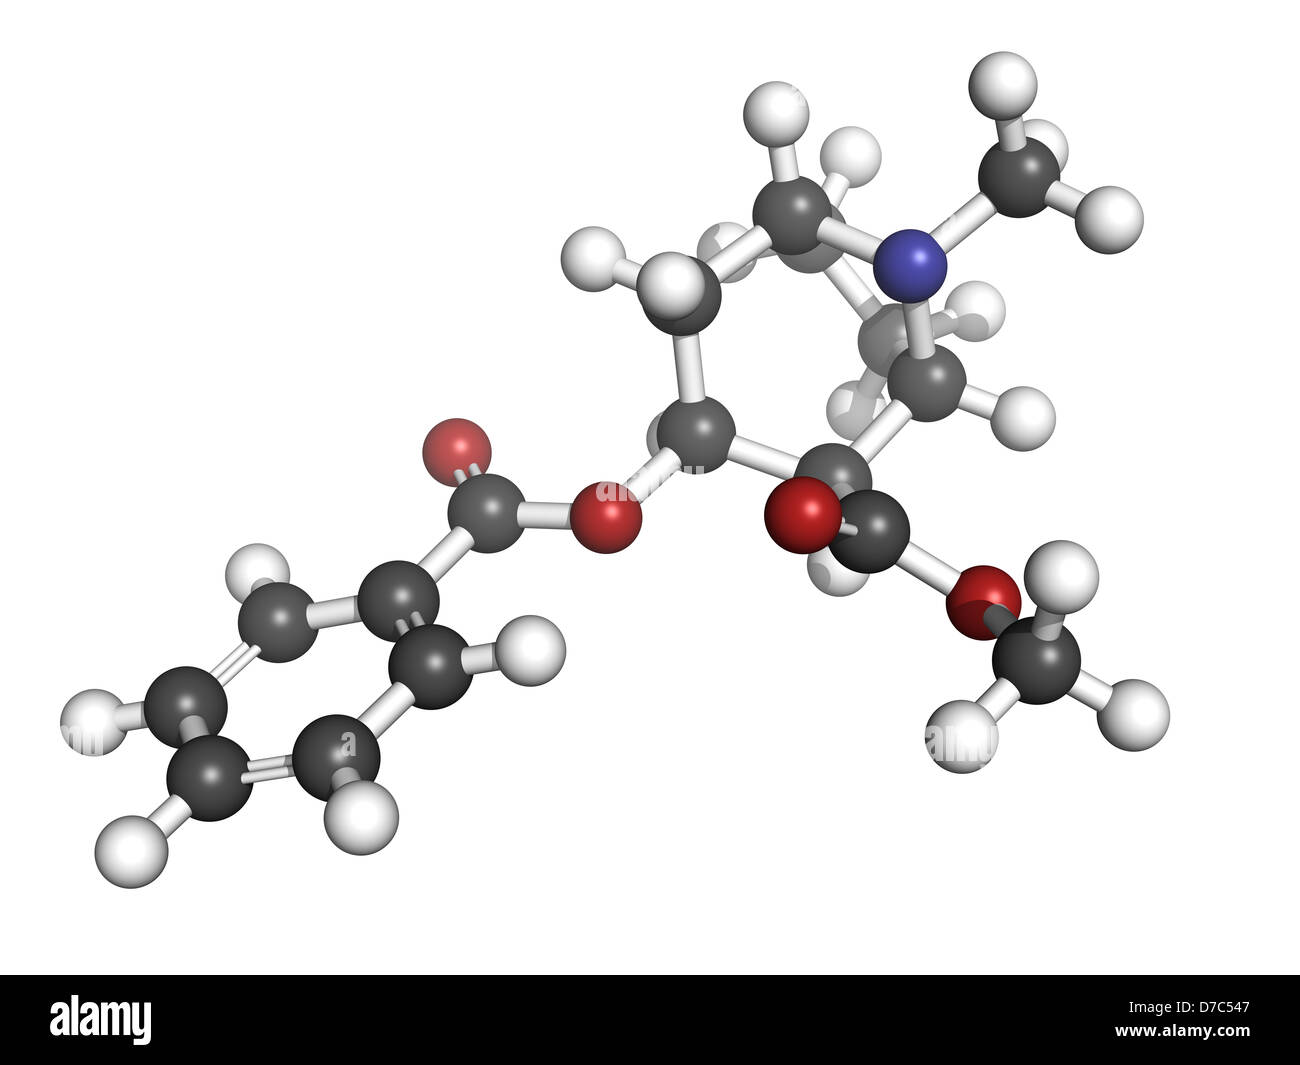 Kokain-Droge, Molekülmodell. Atome werden als Kugeln mit konventionellen Farbkodierung dargestellt. Stockfoto